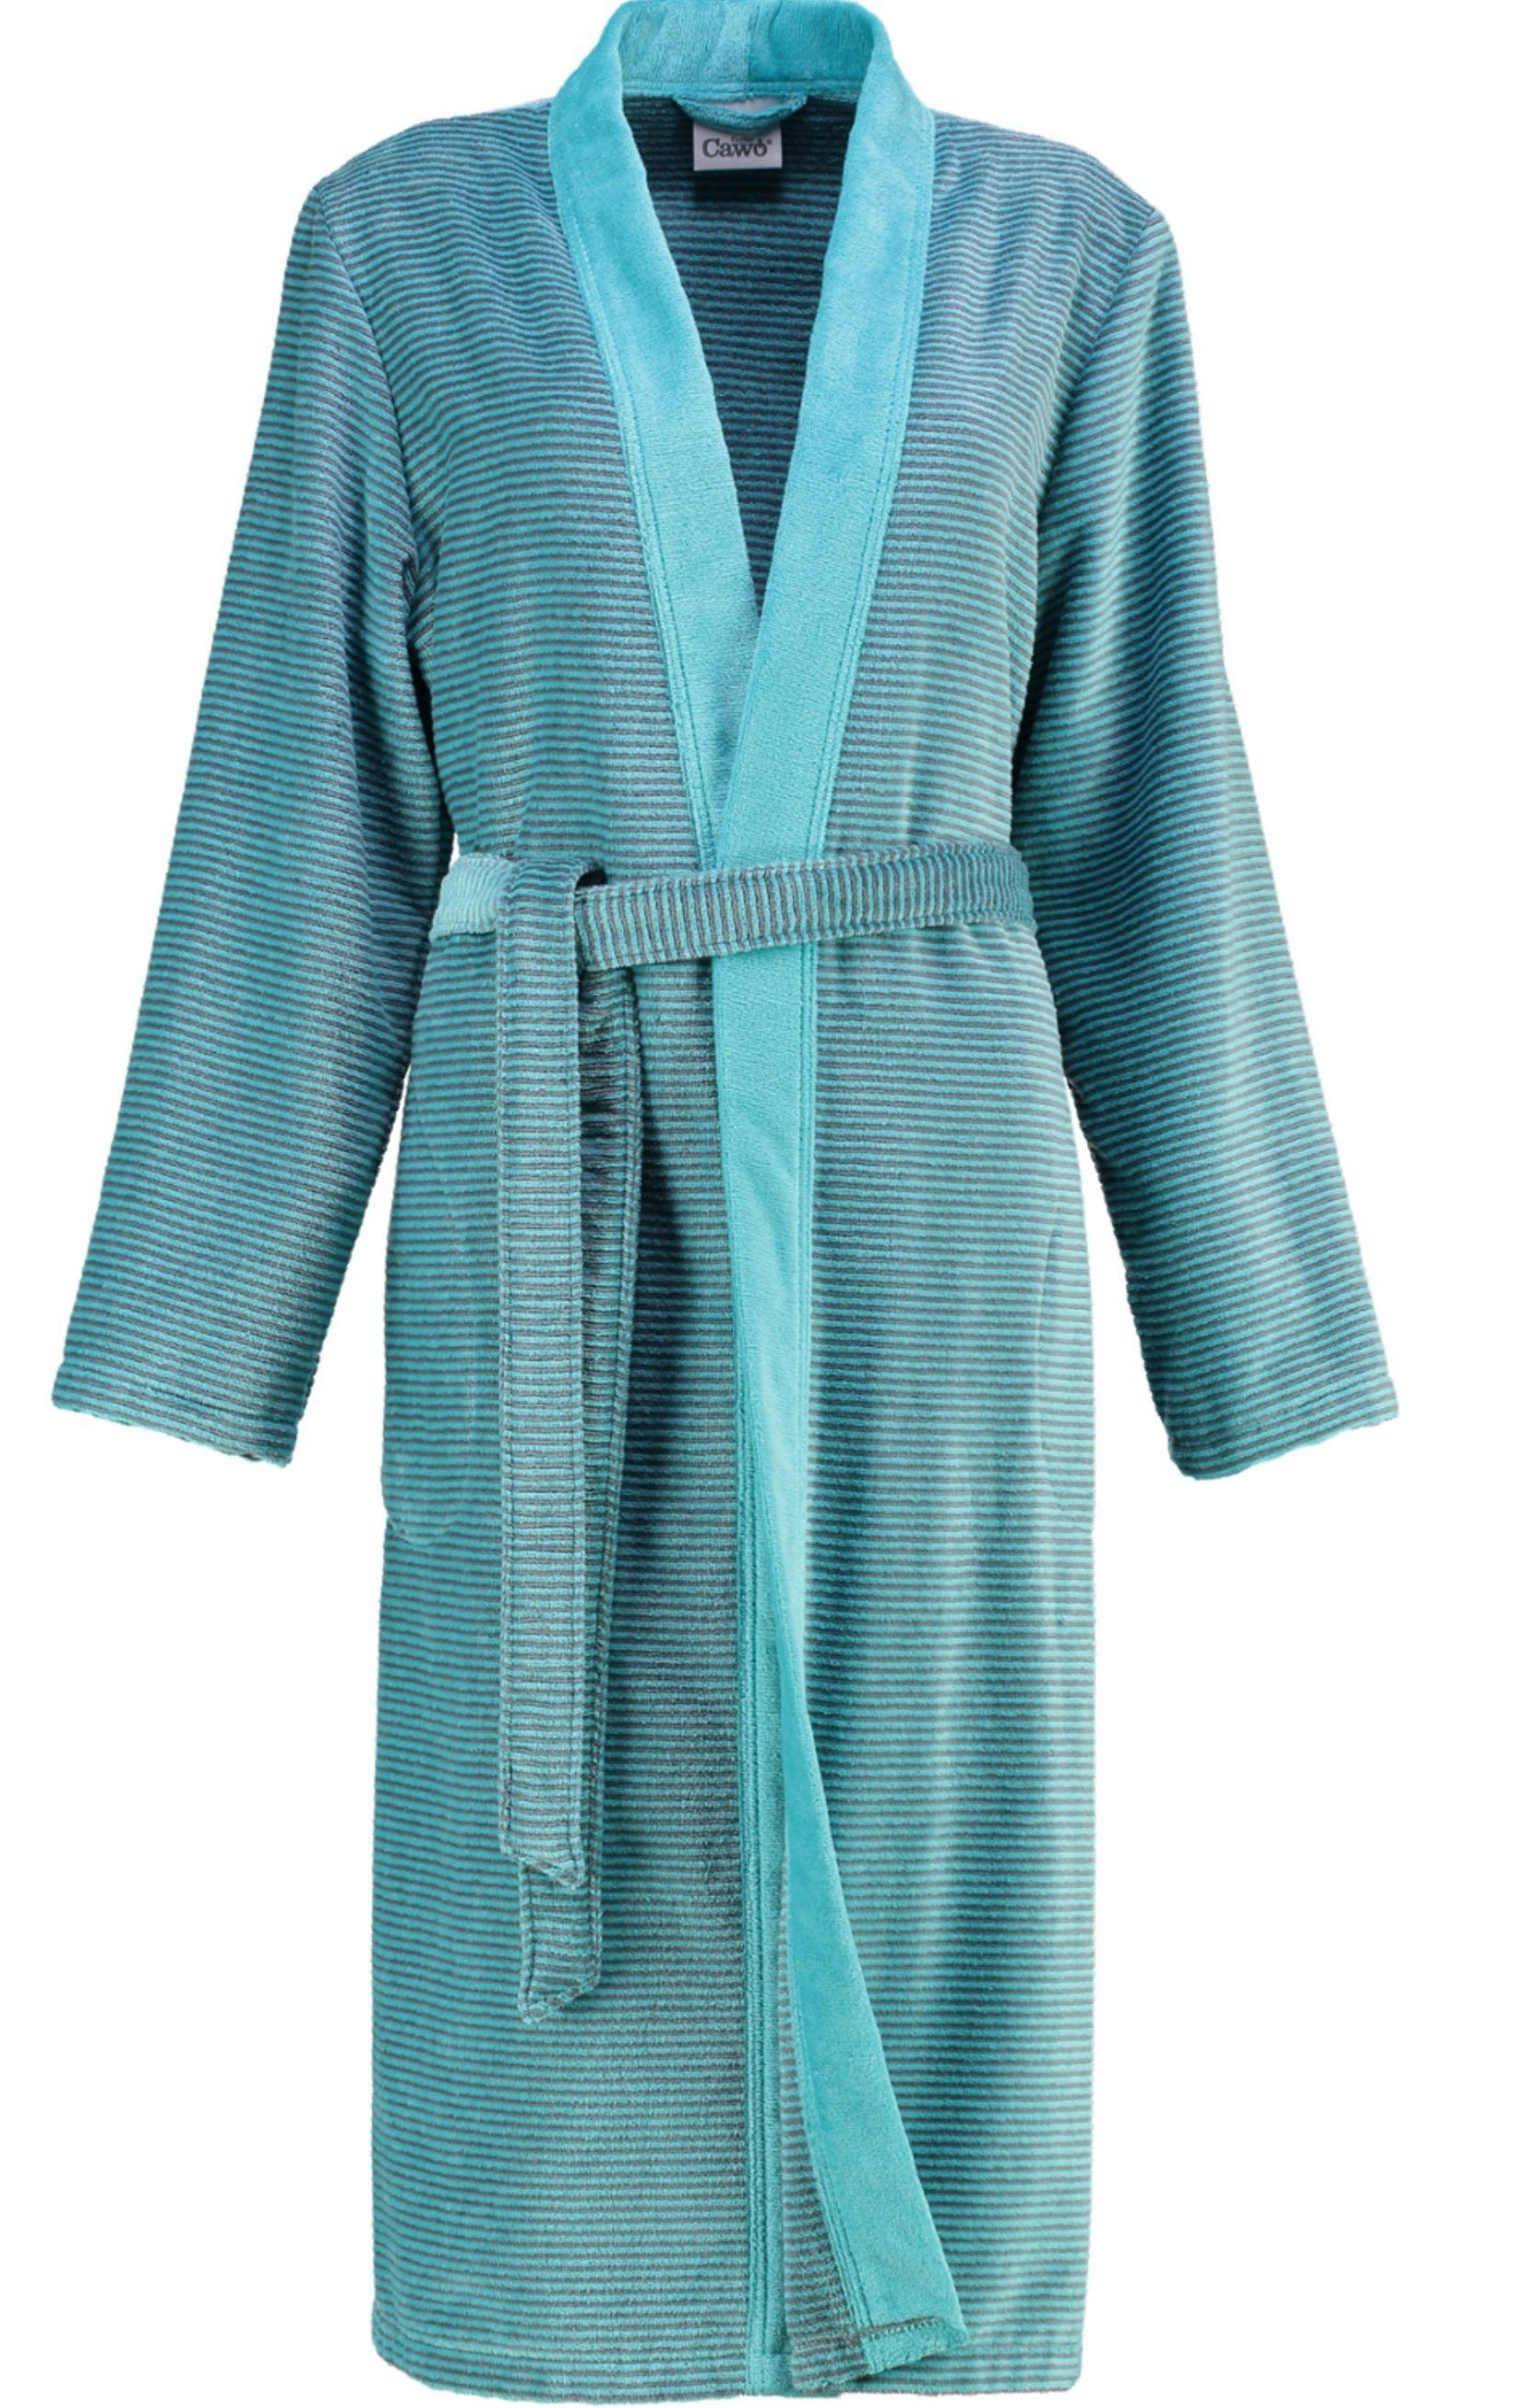 Cawö Damenbademantel, Langform, Baumwolle, Kimono-Kragen, Gürtel, Kimono Form